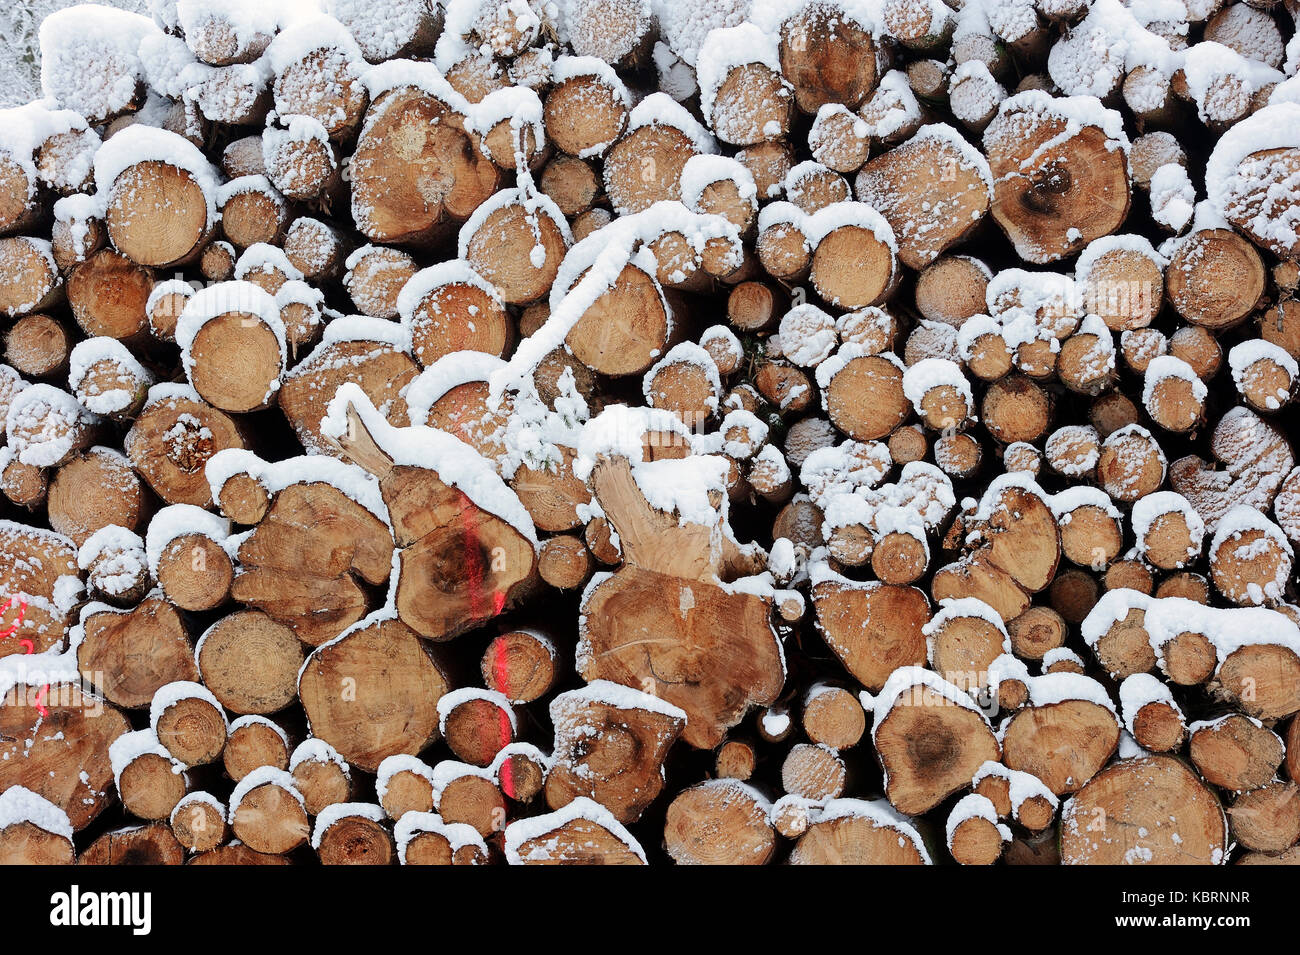 Tas de bois en hiver, en Rhénanie du Nord-Westphalie, Allemagne | Holzstapel im Winter, Nordrhein-Westfalen, Deutschland Banque D'Images